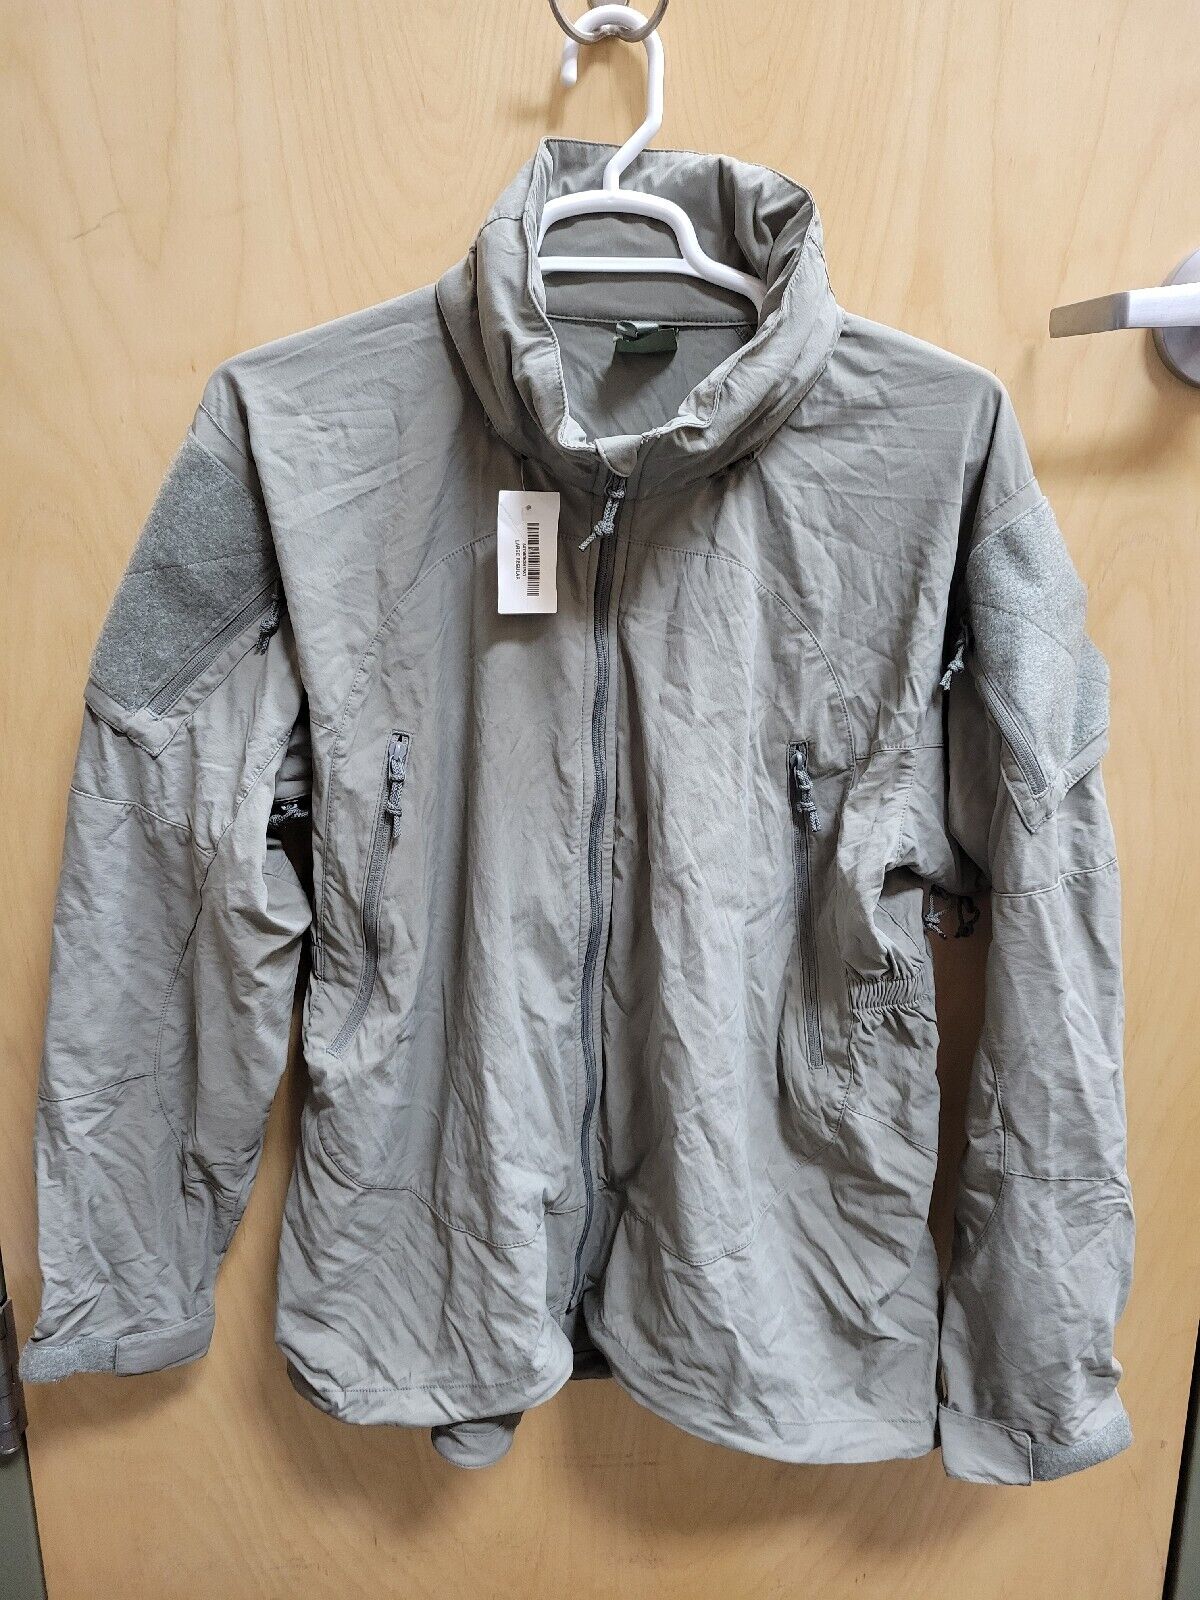 Patagonia PCU Level 5 Jacket Grey Size Large Regular Unissued New